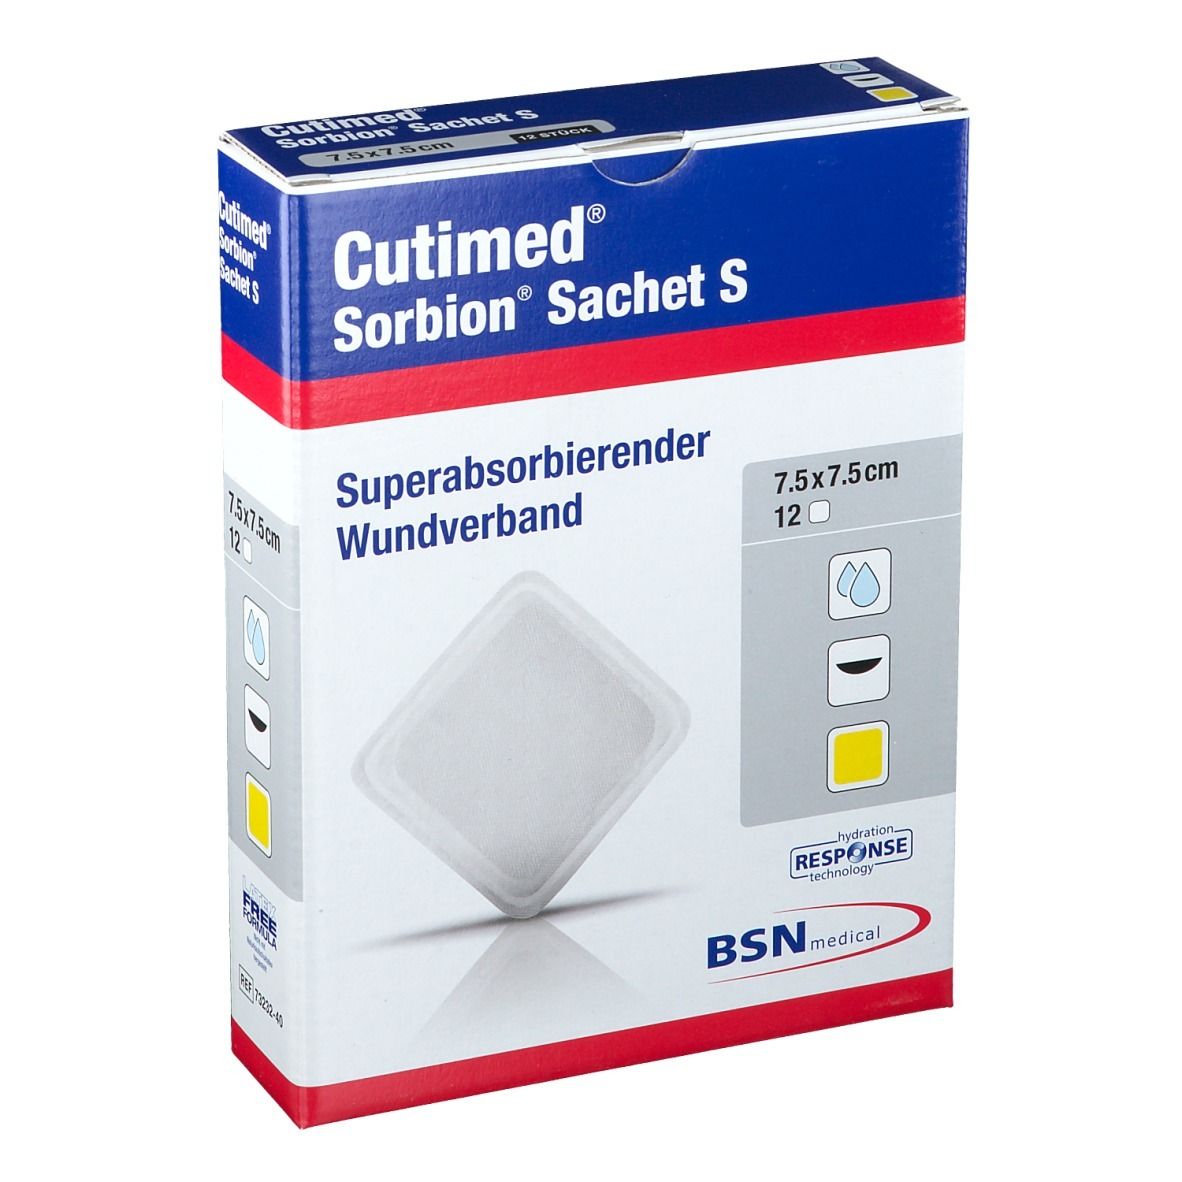 Cutimed® Sorbion Sachet S 7,5 cm x 7,5 cm